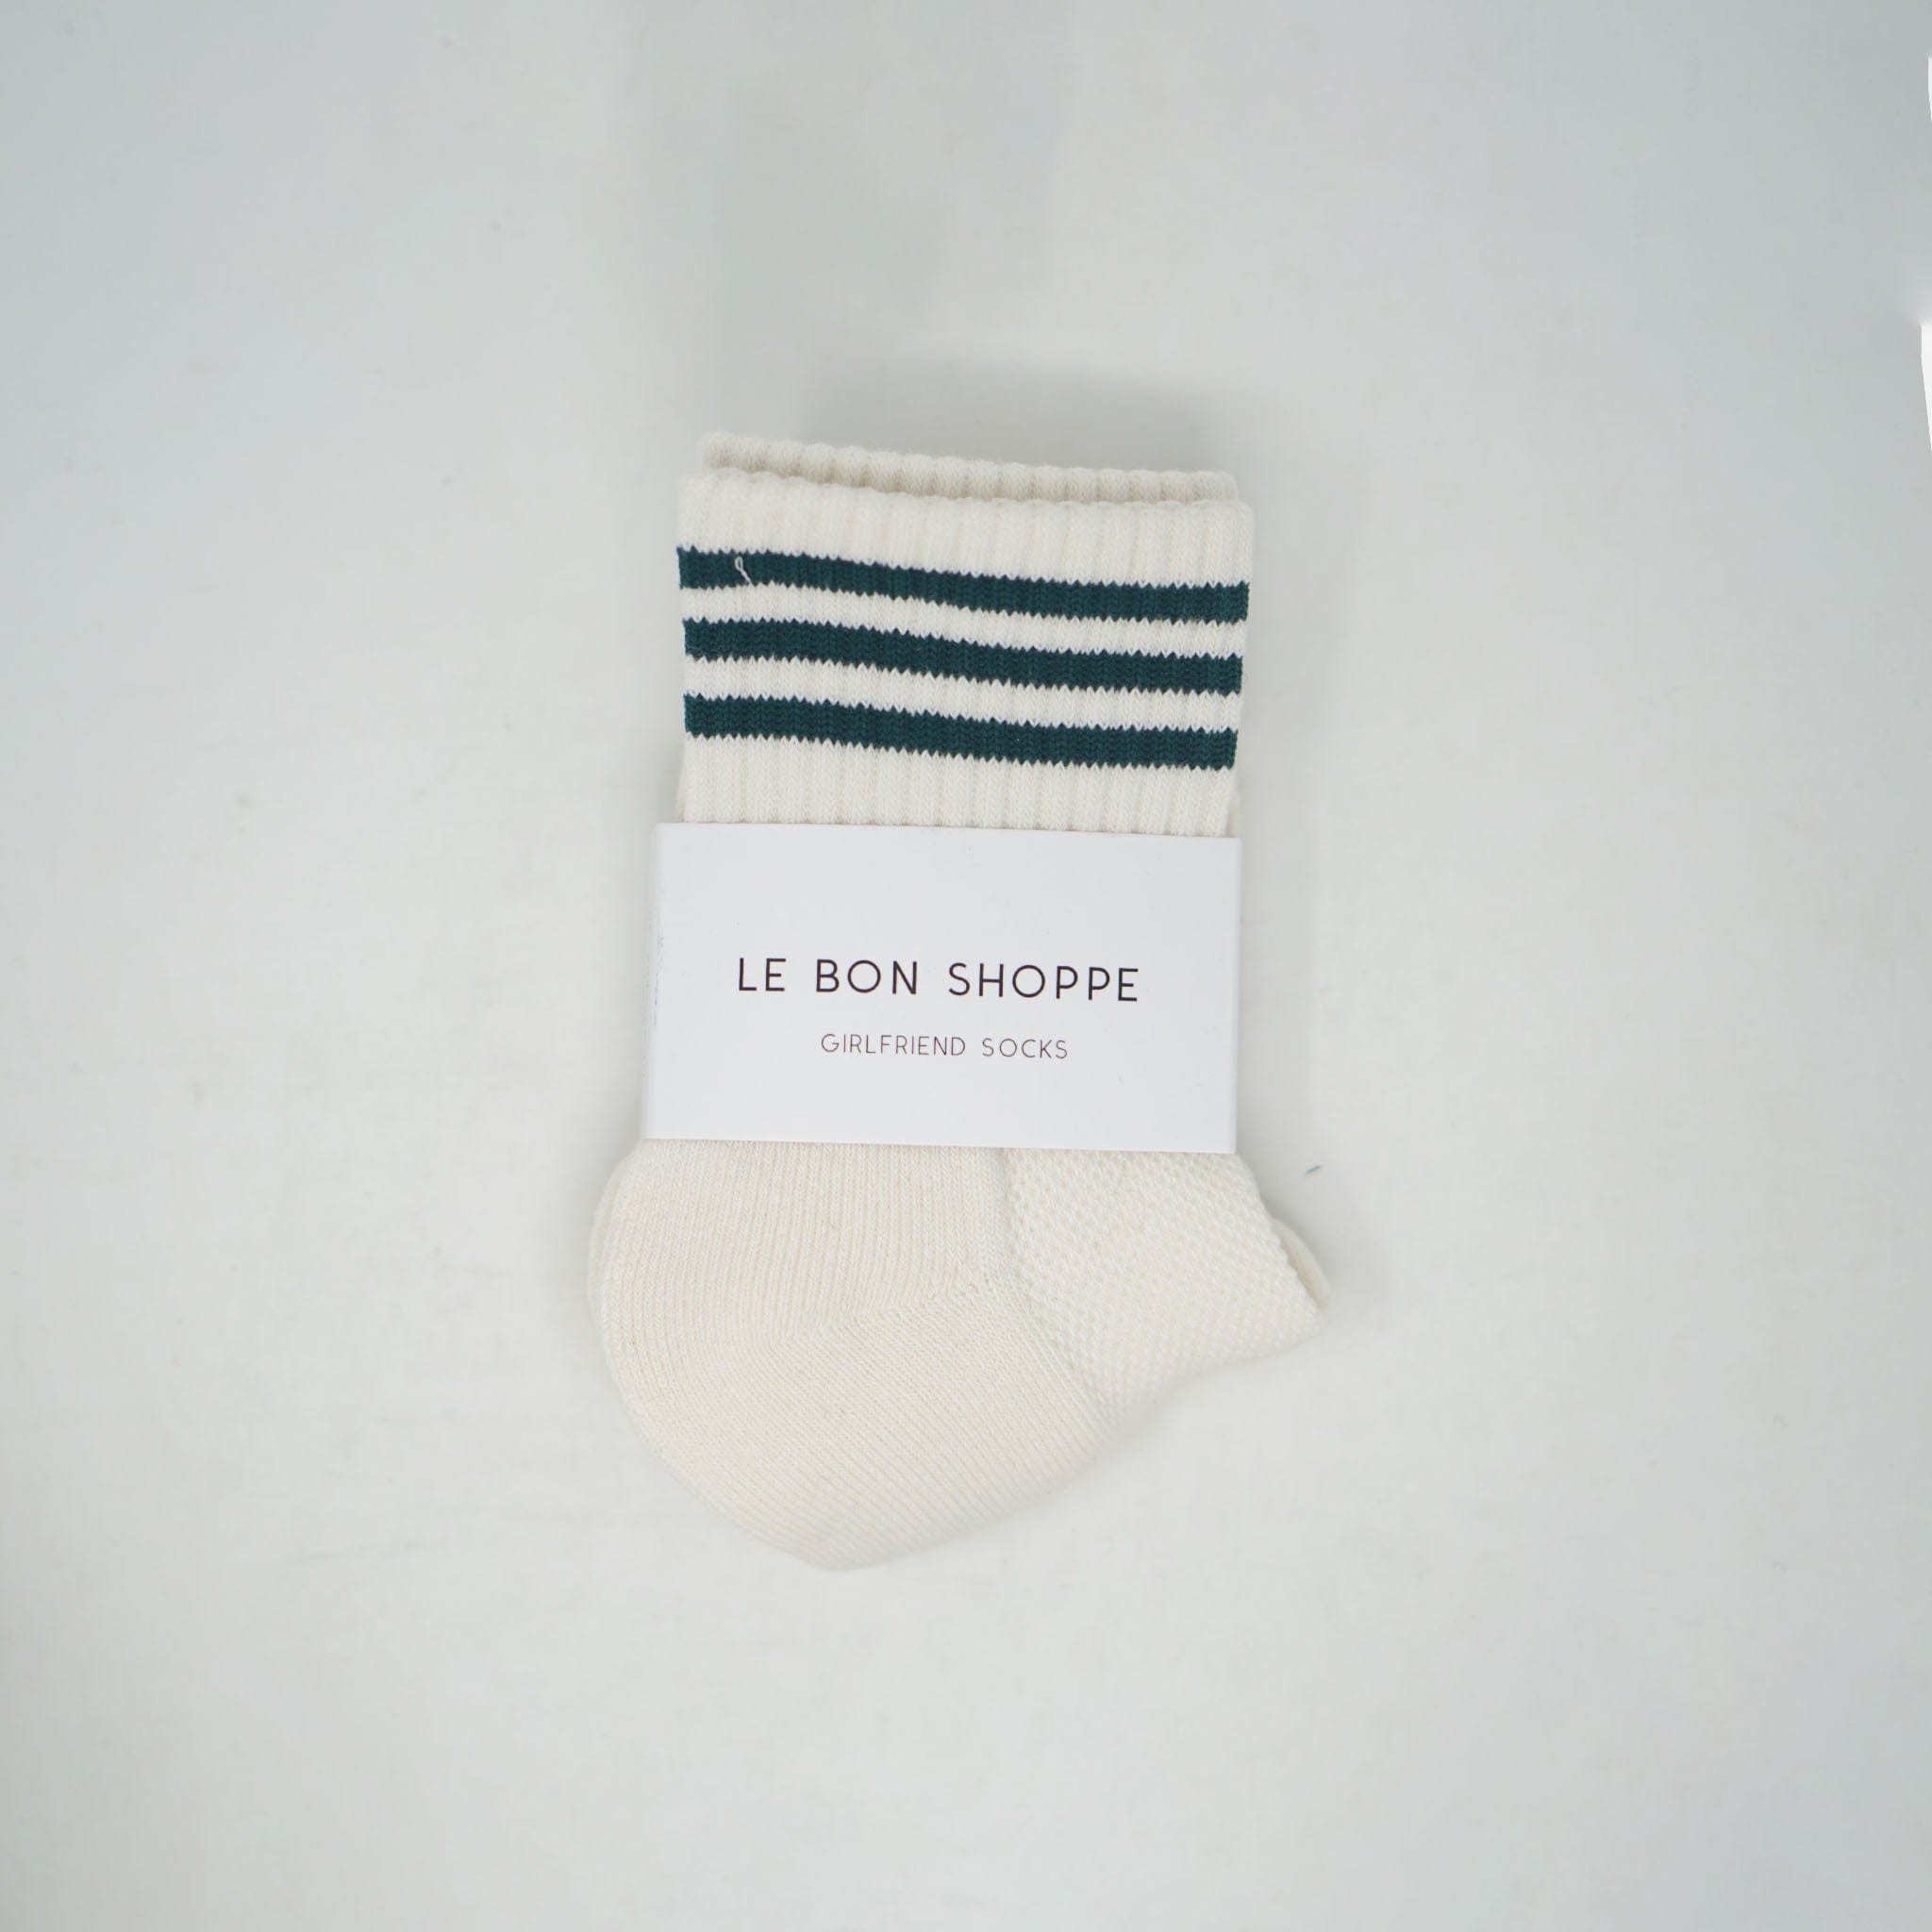 Le Bon Shoppe Gilfriend Socks Egret Socks  - ZIGZAG Footwear